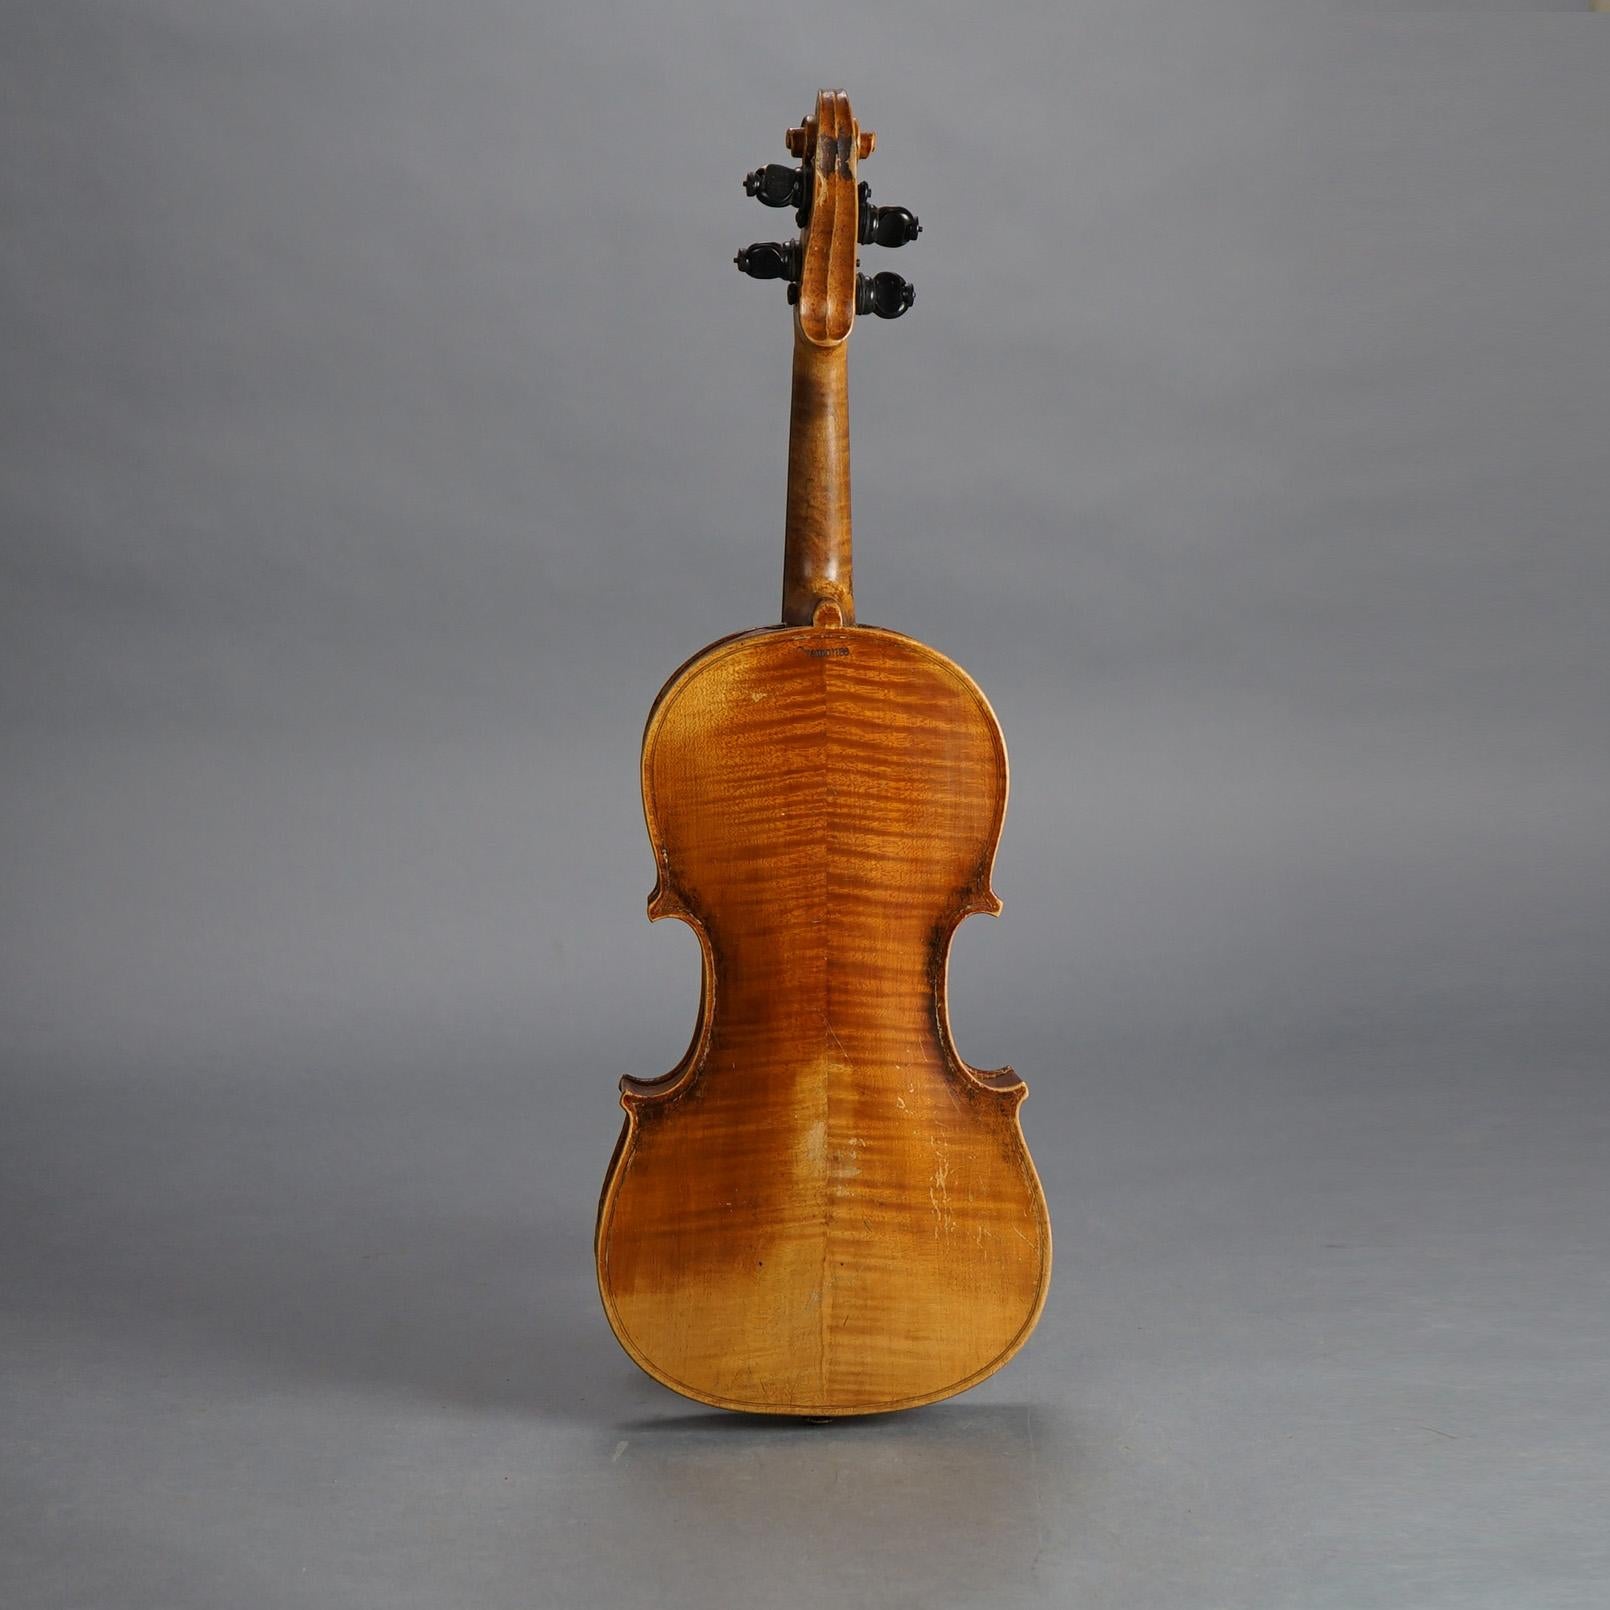 Antique Jacob Steiner School Cremonae Violin, Bow & Case C1900

Measures - 31.5